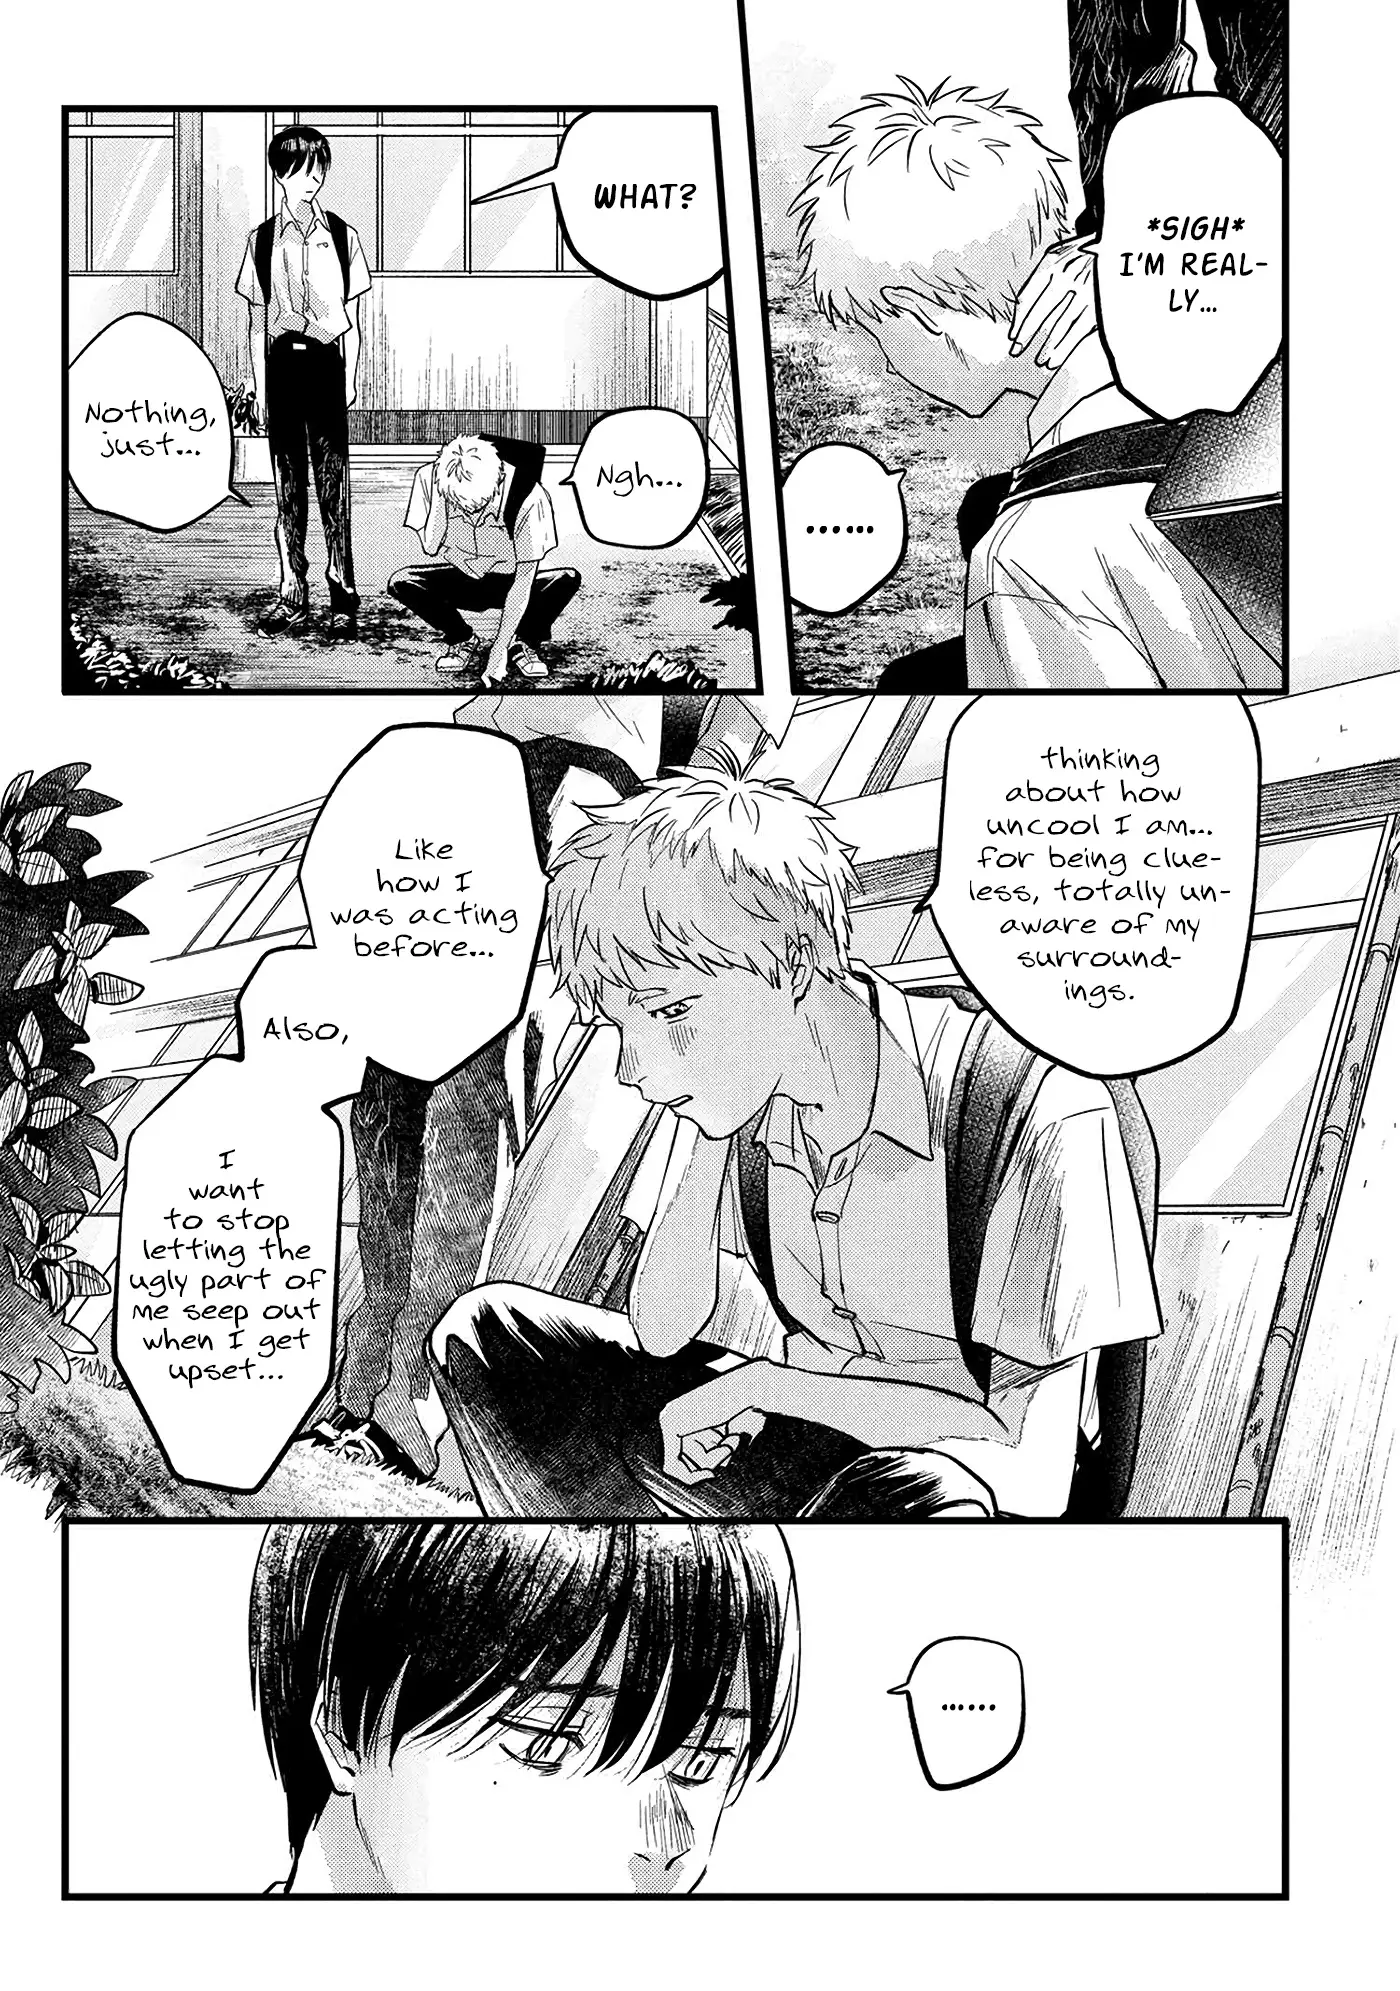 Hikaru Ga Shinda Natsu - 8 page 8-e2fa7c94